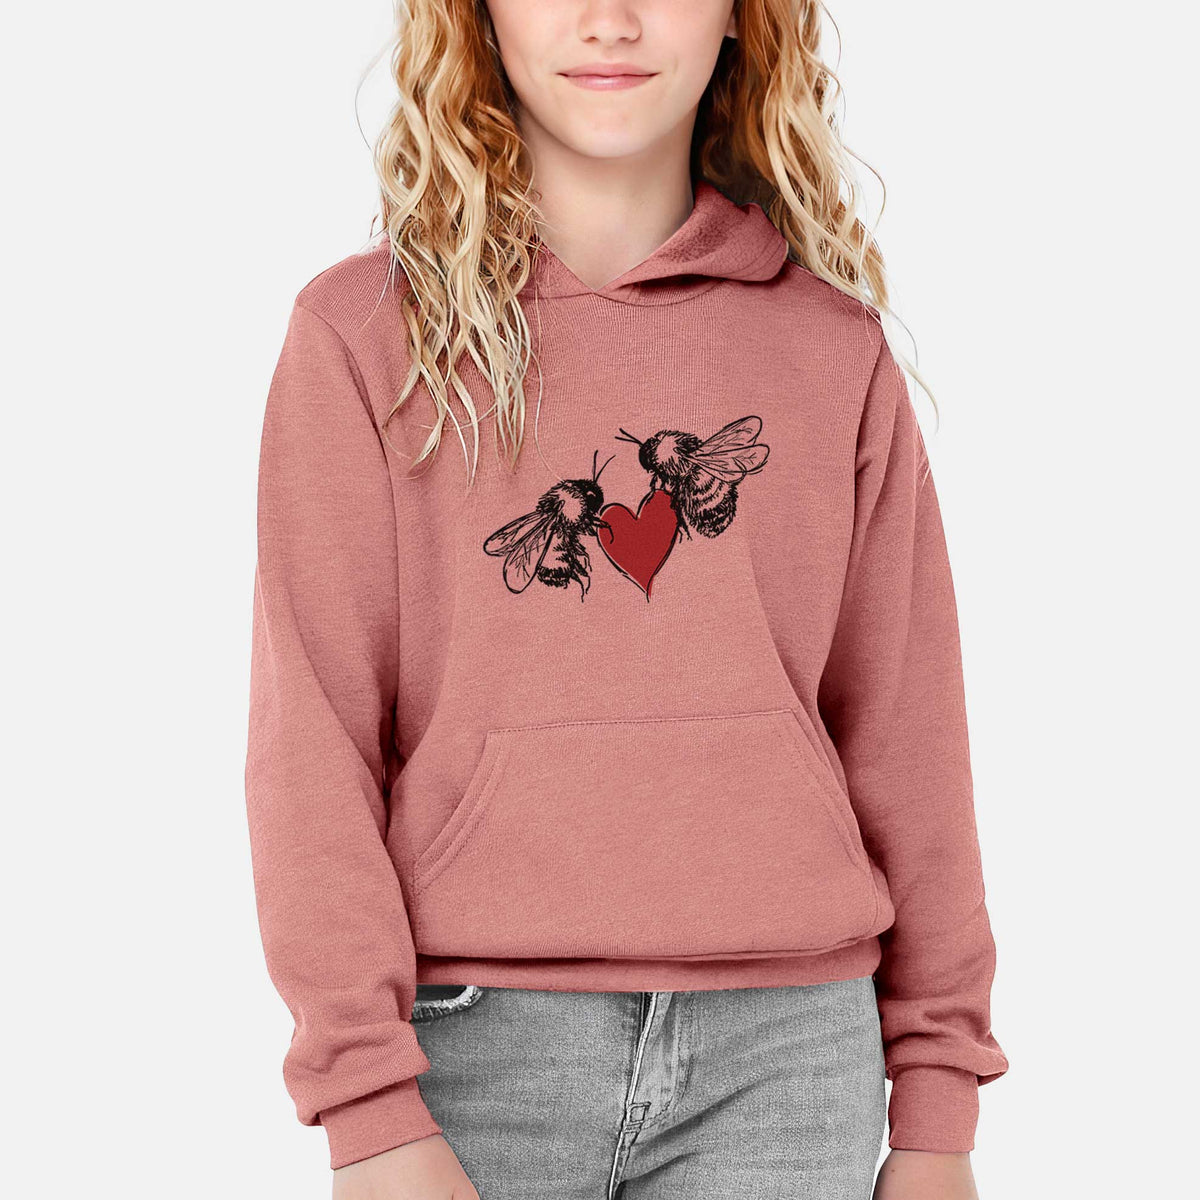 Love Bees - Youth Hoodie Sweatshirt